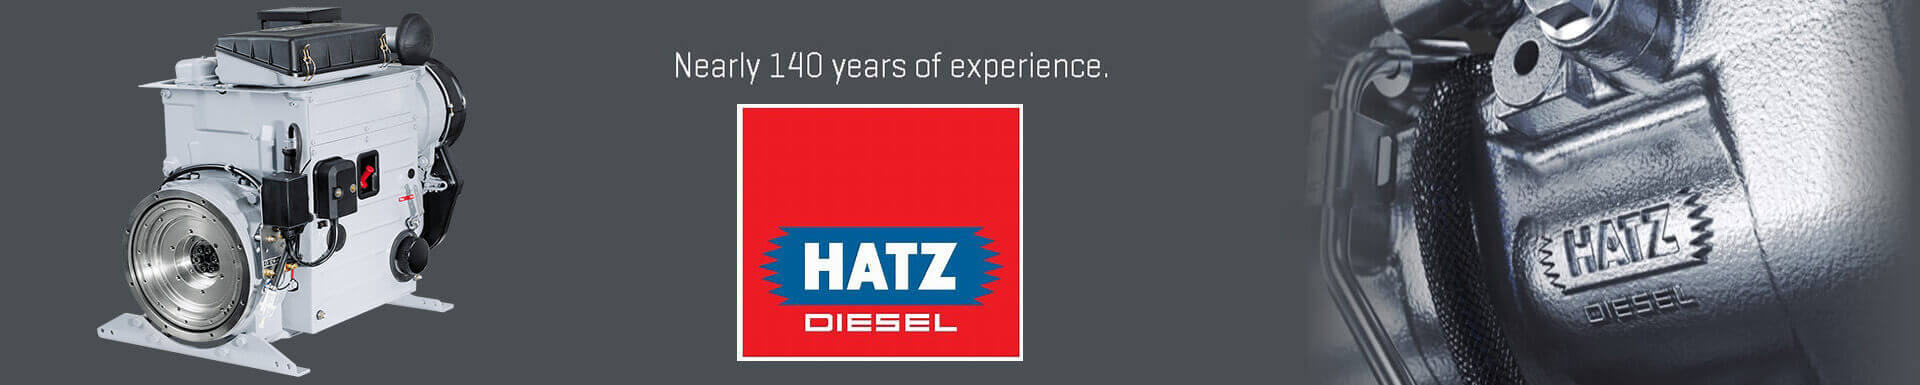 Hatz Diesel Engines